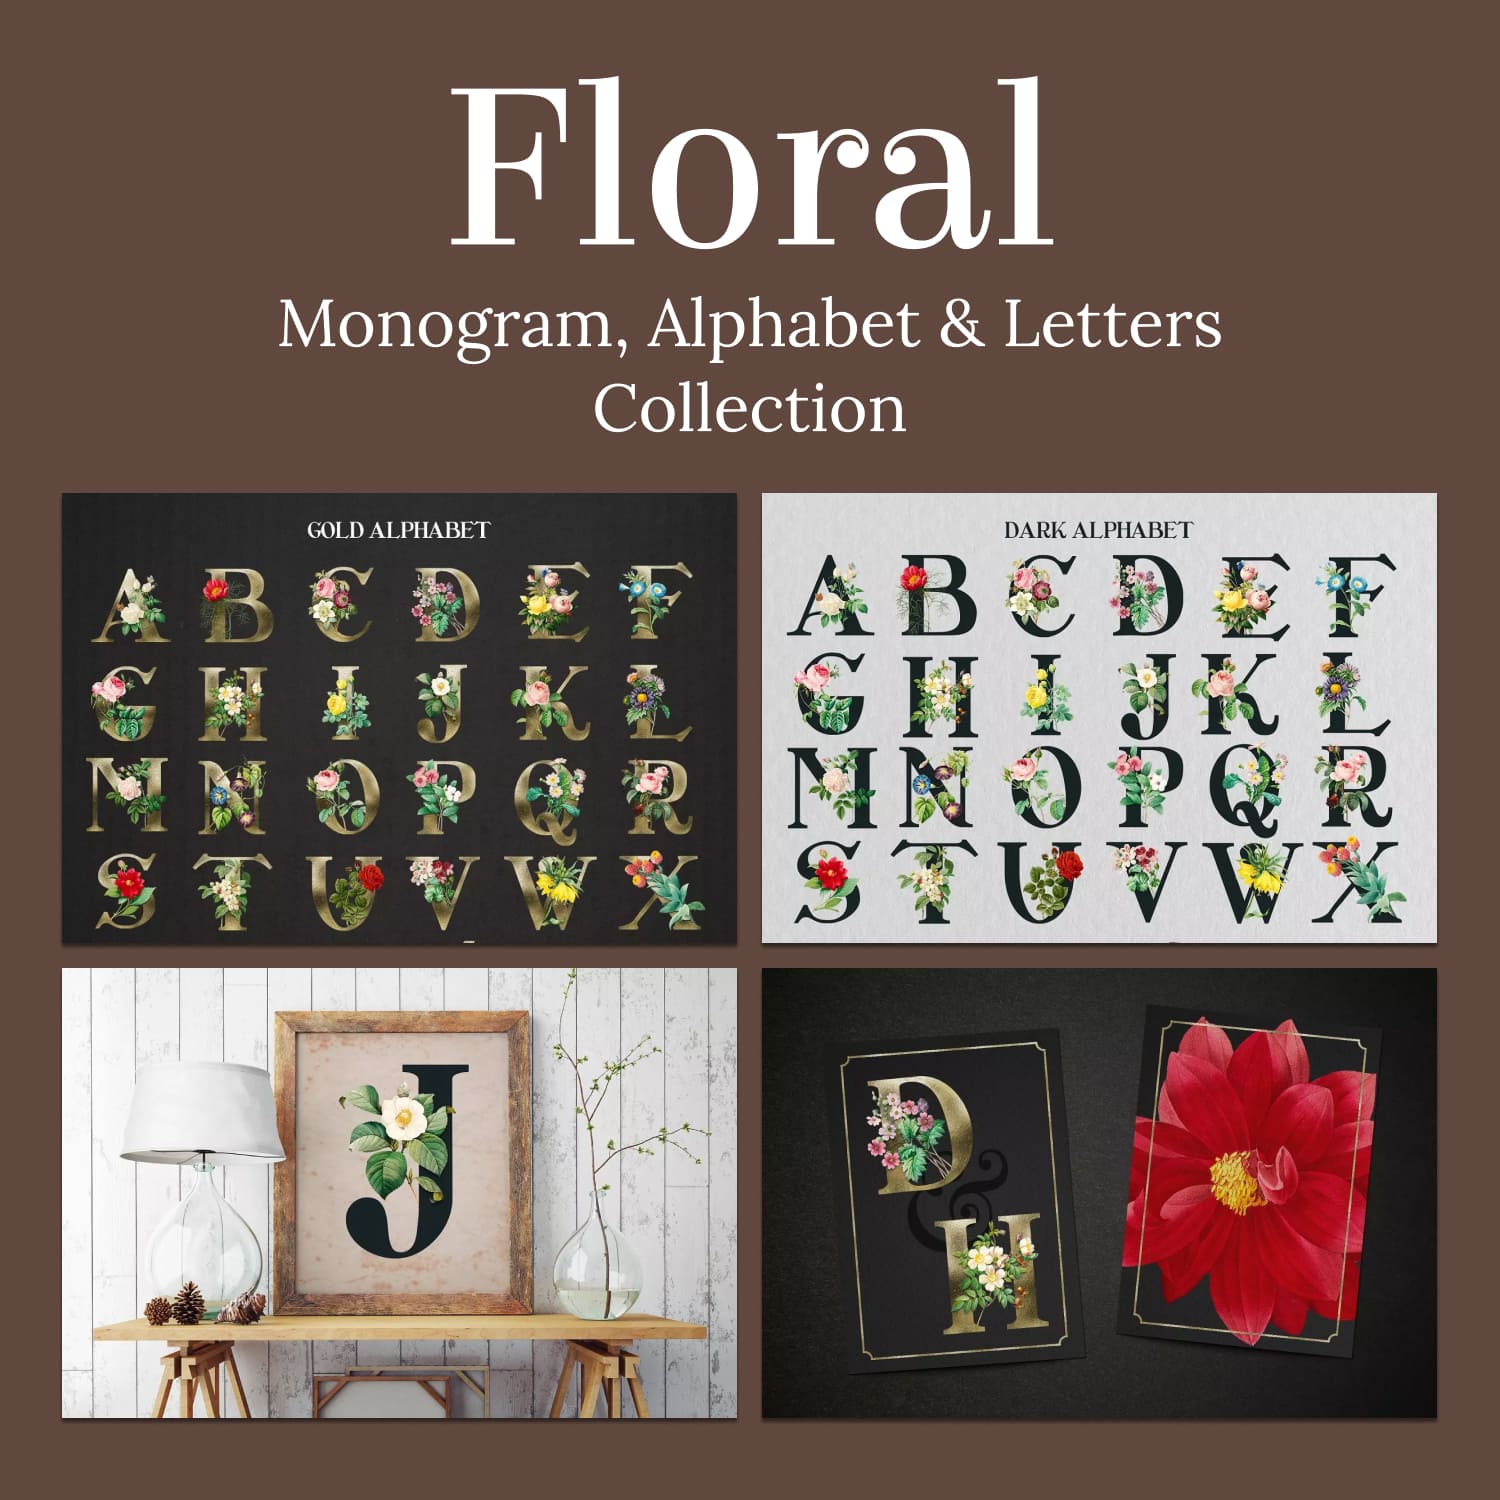 Floral Monogram, Alphabet & Letters Collection.